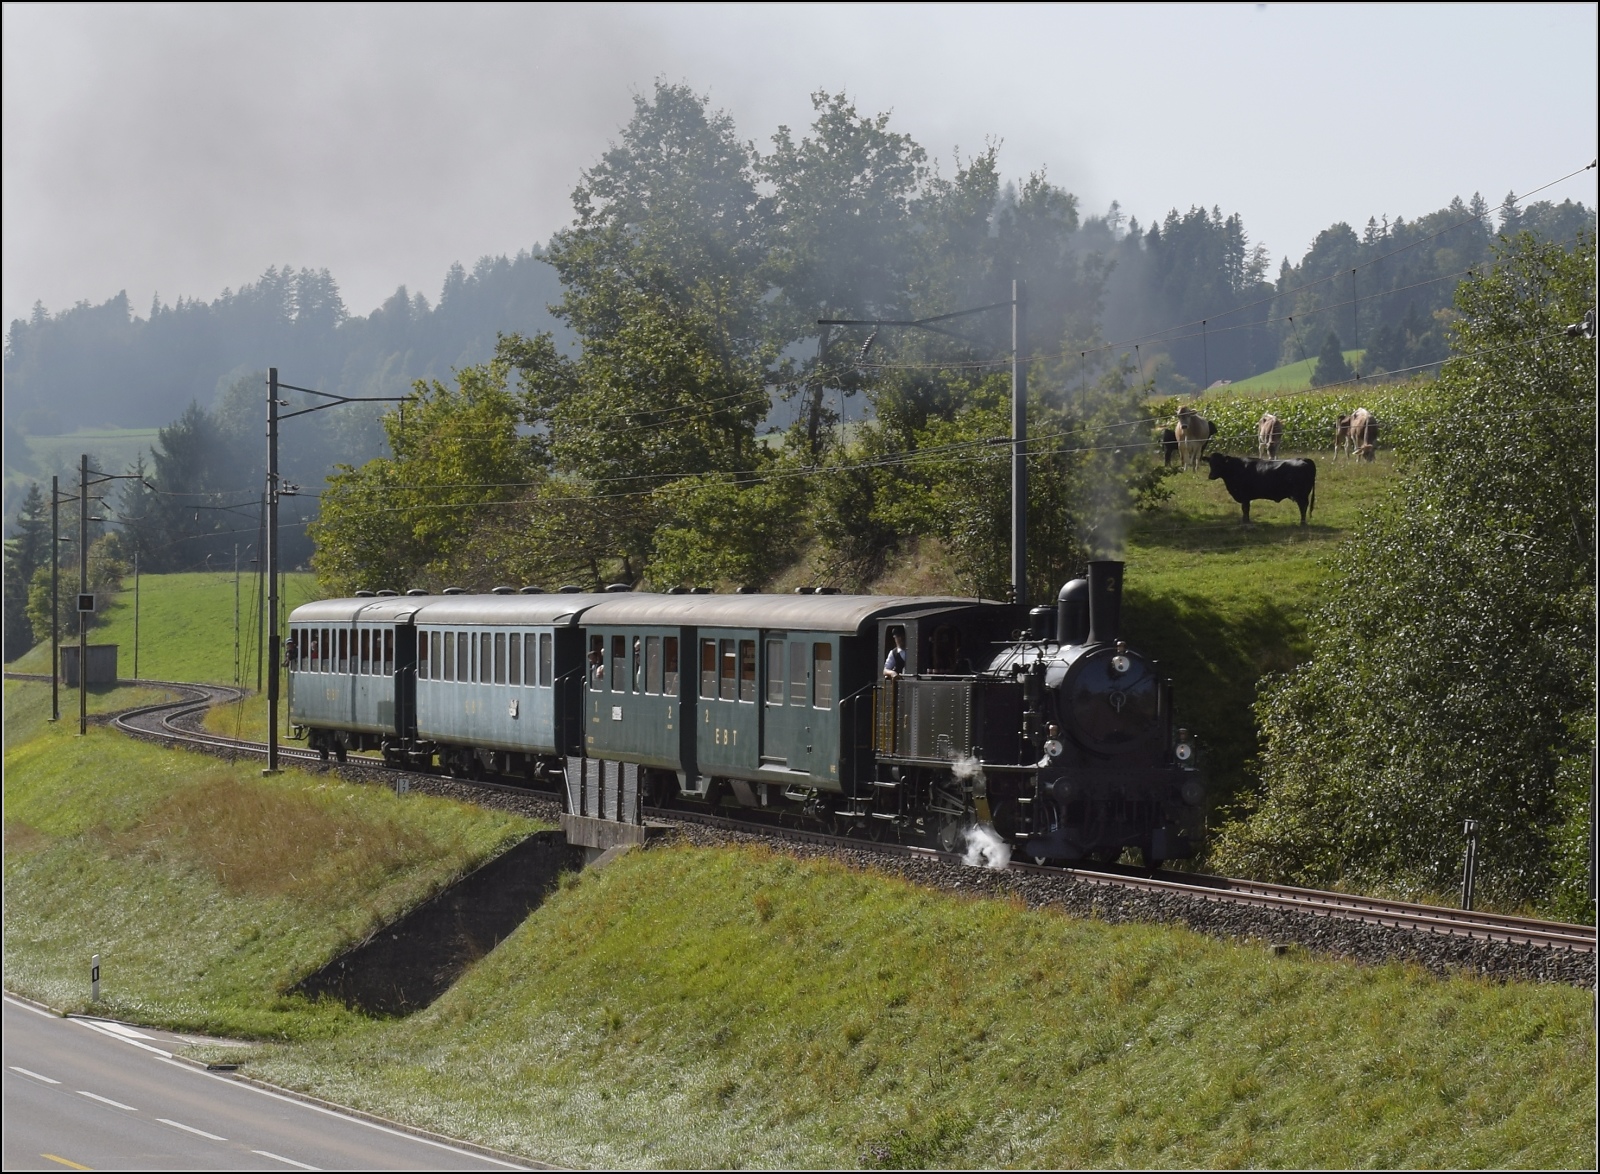 Dampftage Huttwil.

Ed 3/4 2 der Solothurn-Münster-Bahn auf dem Weg nach Huttwil. Nicht alle Eisenbahnfans sind zweibeinig. Der schwarze Fan stand schon da, der hellbraune Fan kam im Sauseschritt angerannt. Wenn es schon mal Action nahe der Weide angesagt ist, dann muss man das auch bestaunen. Griesbachmoos, Oktober 2023.